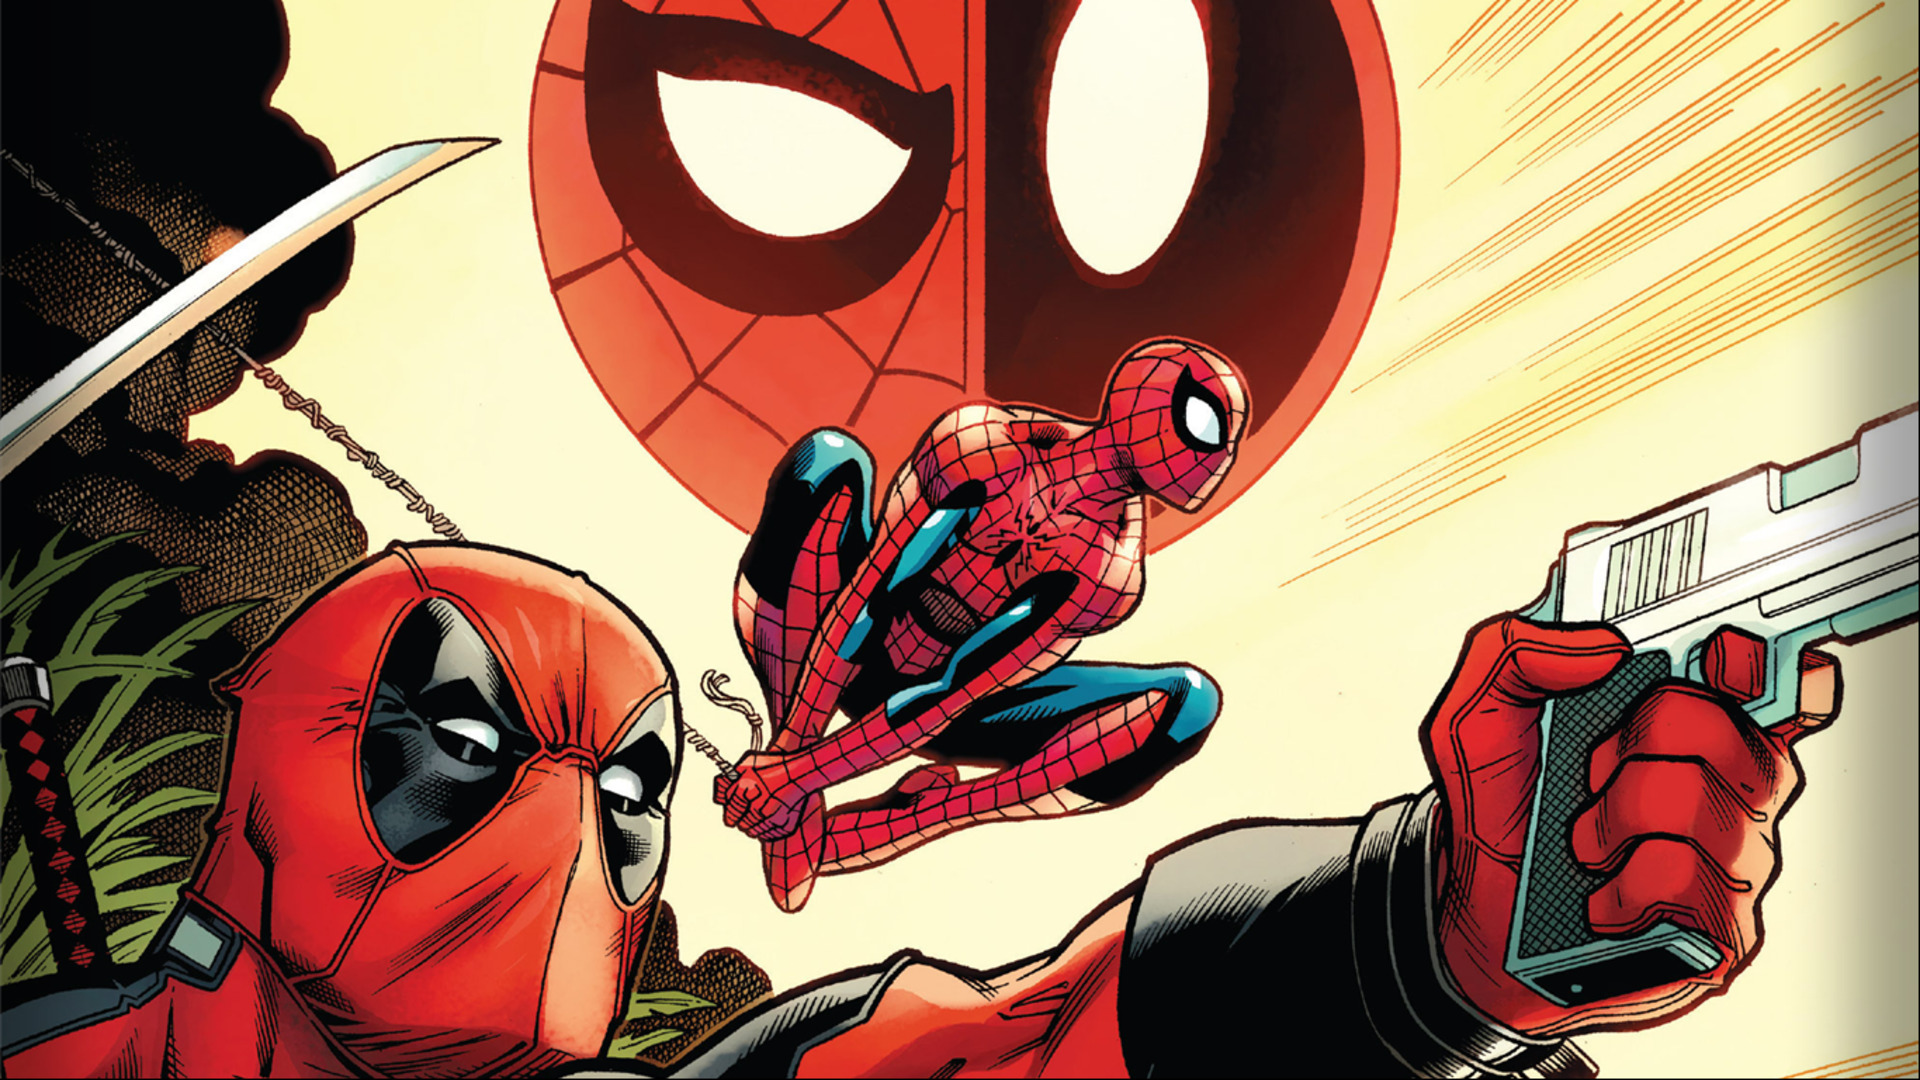  Spiderman  Deadpool  PS4Wallpapers com